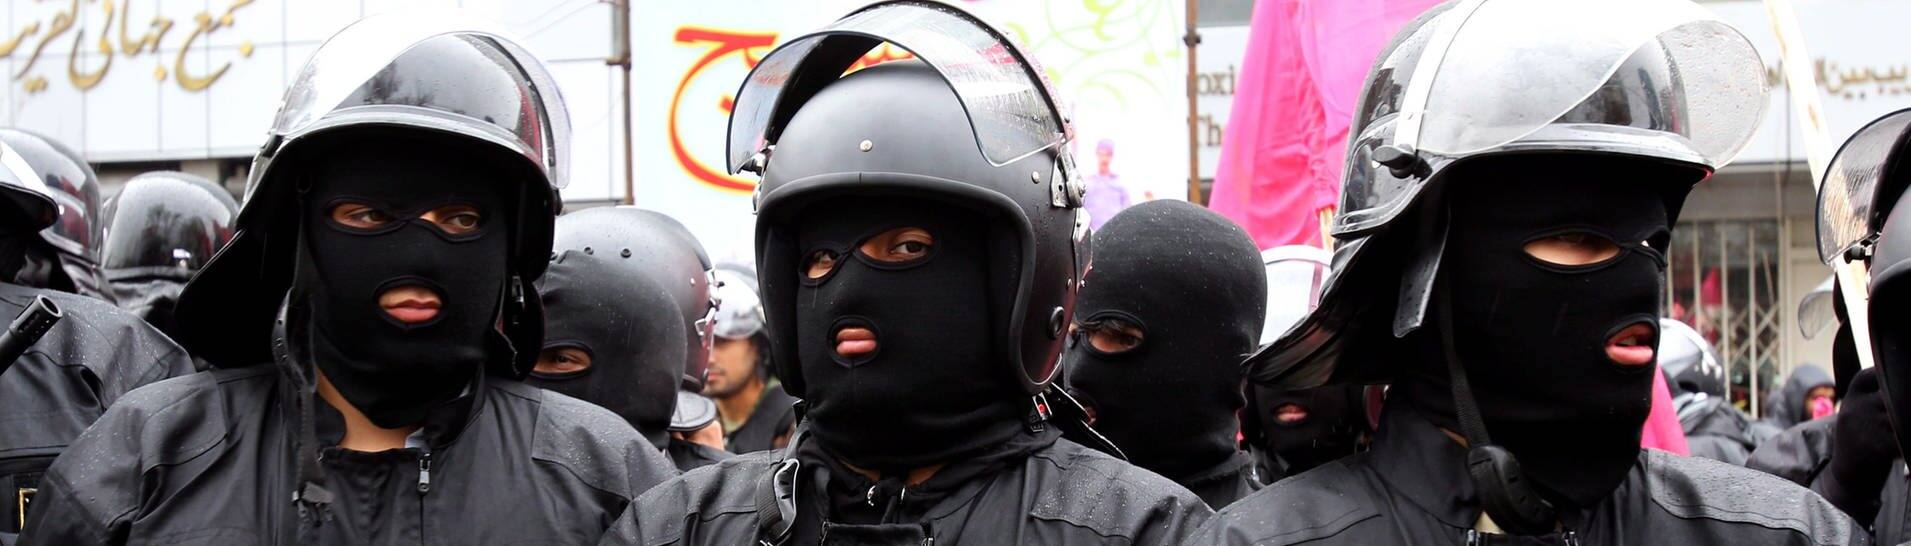 Mitglieder der iranischen Bassidsch-Miliz. (Foto: dpa Bildfunk, picture alliance / dpa | Abedin Taherkenareh)